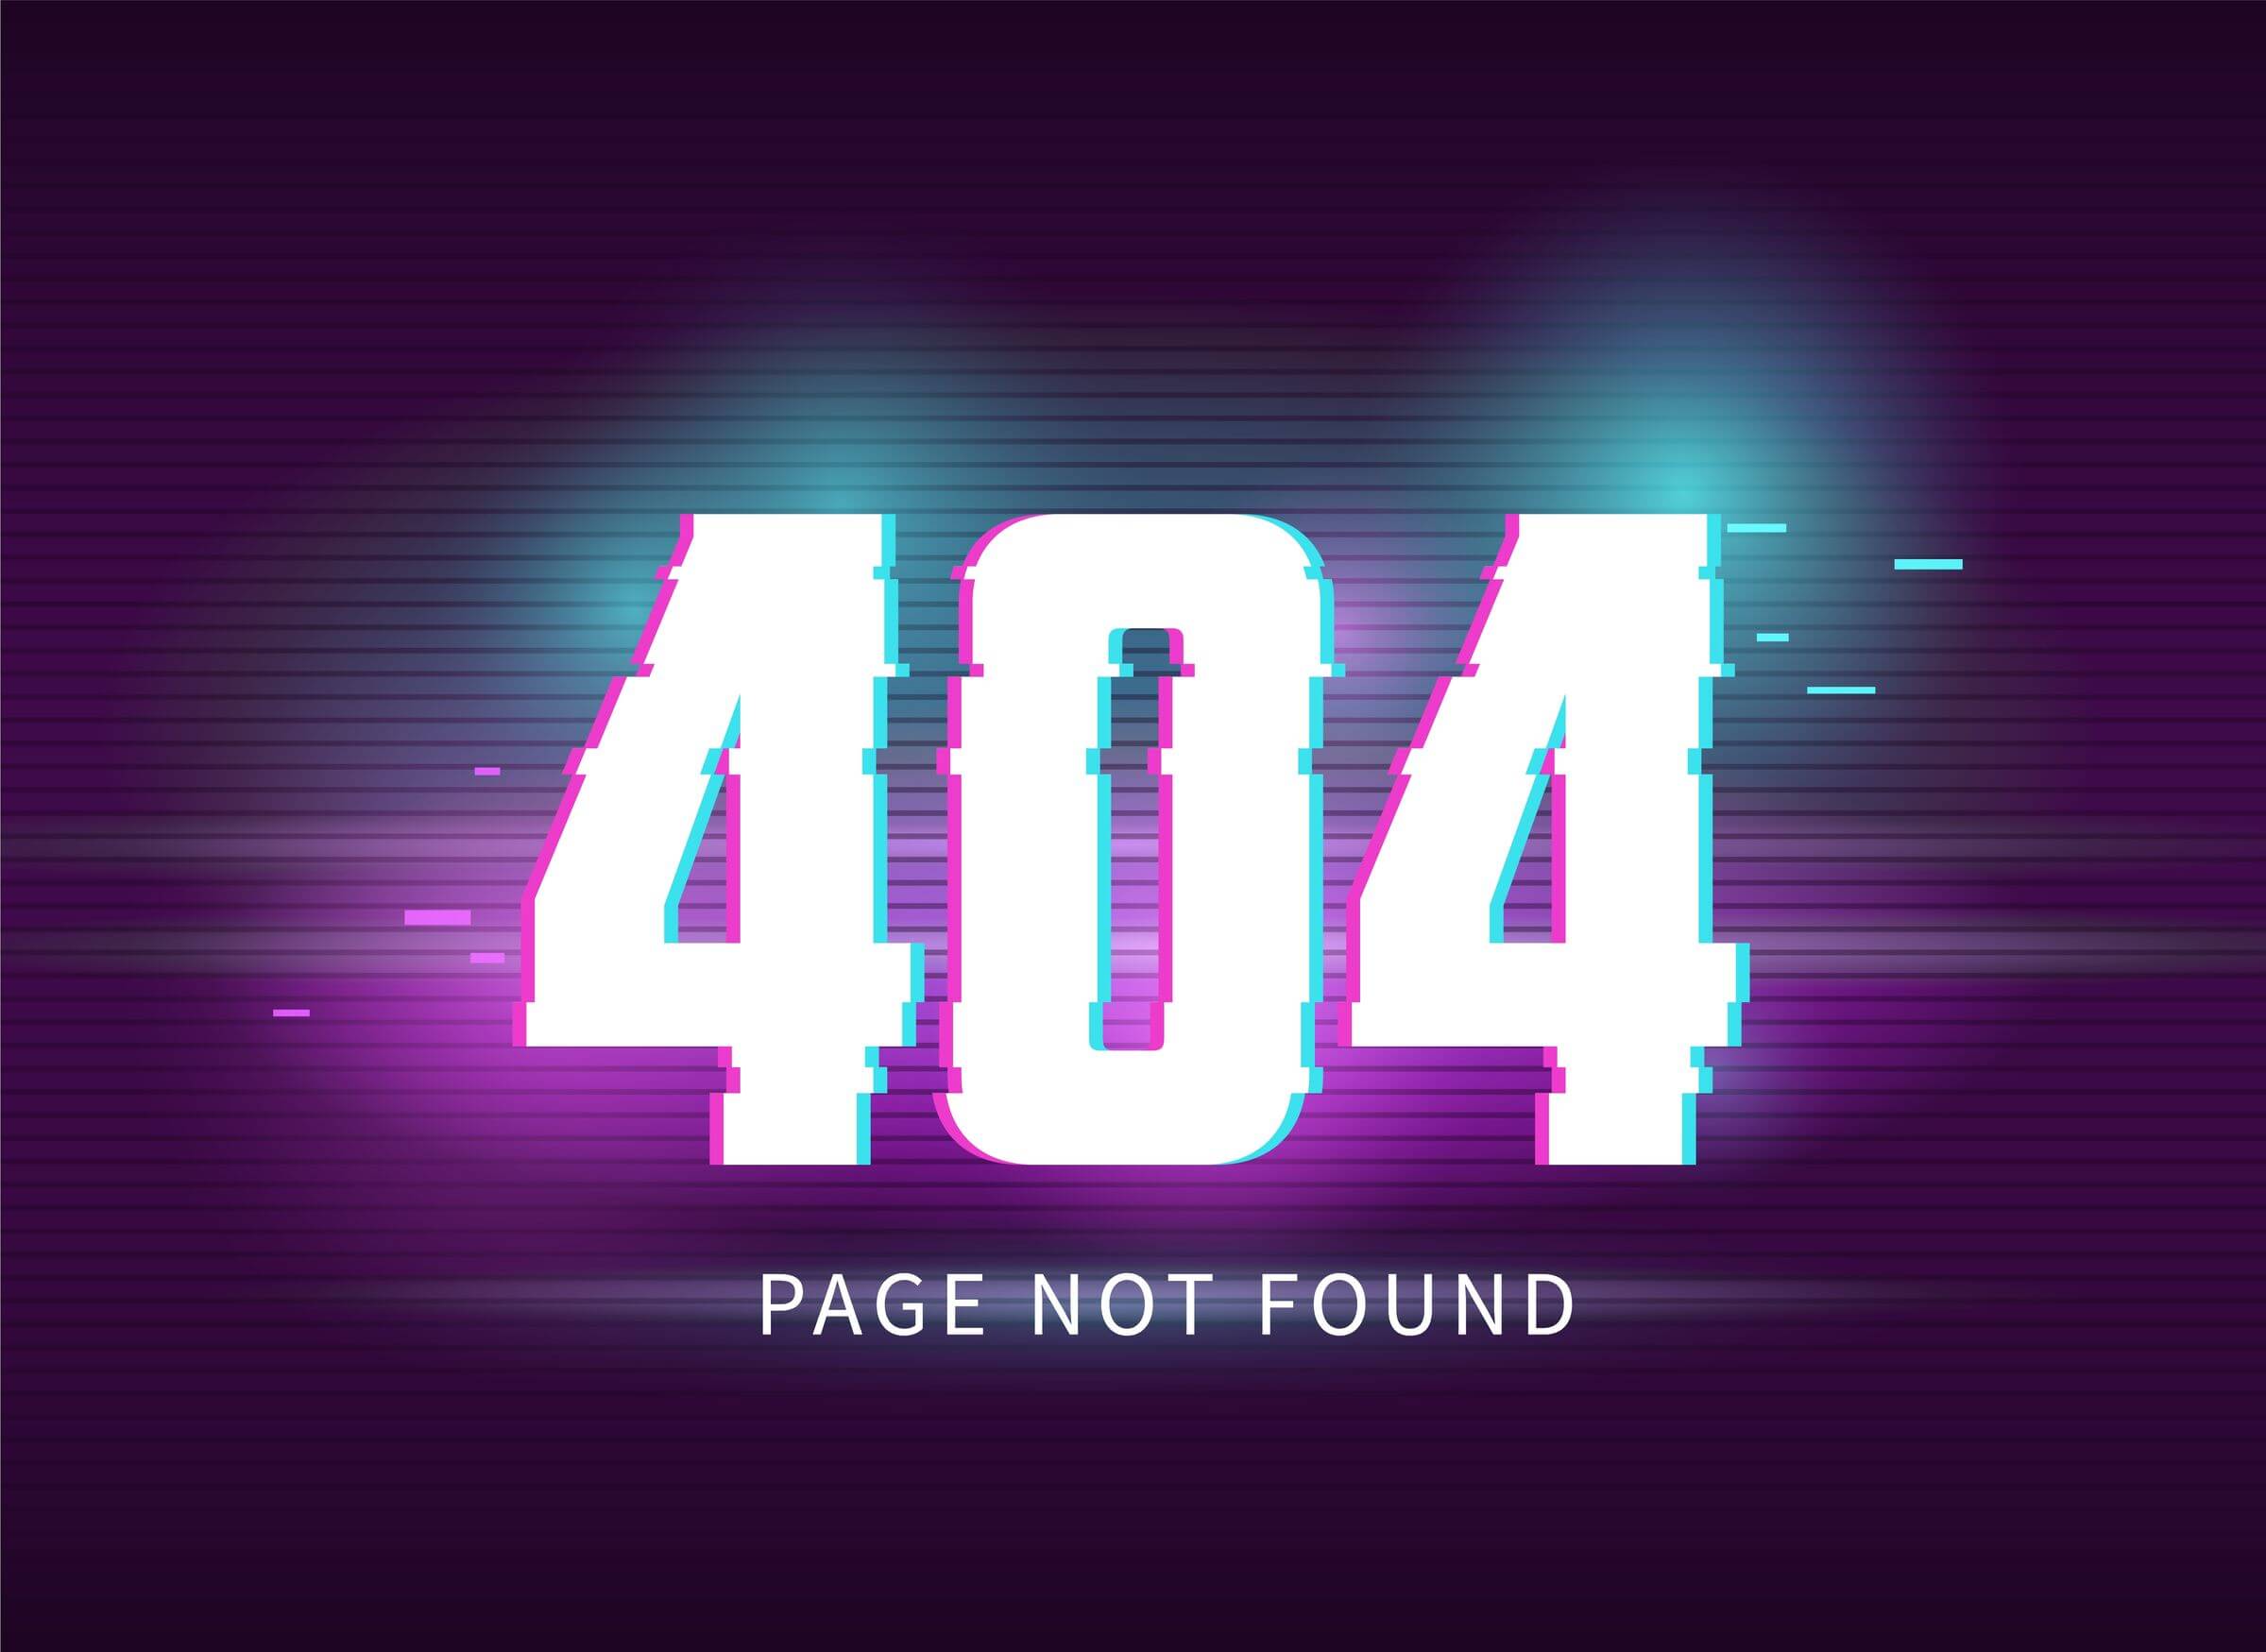 Hata 404 Bulunamadı: Nedenleri ve Üstesinden Gelmenin Kolay Yolları